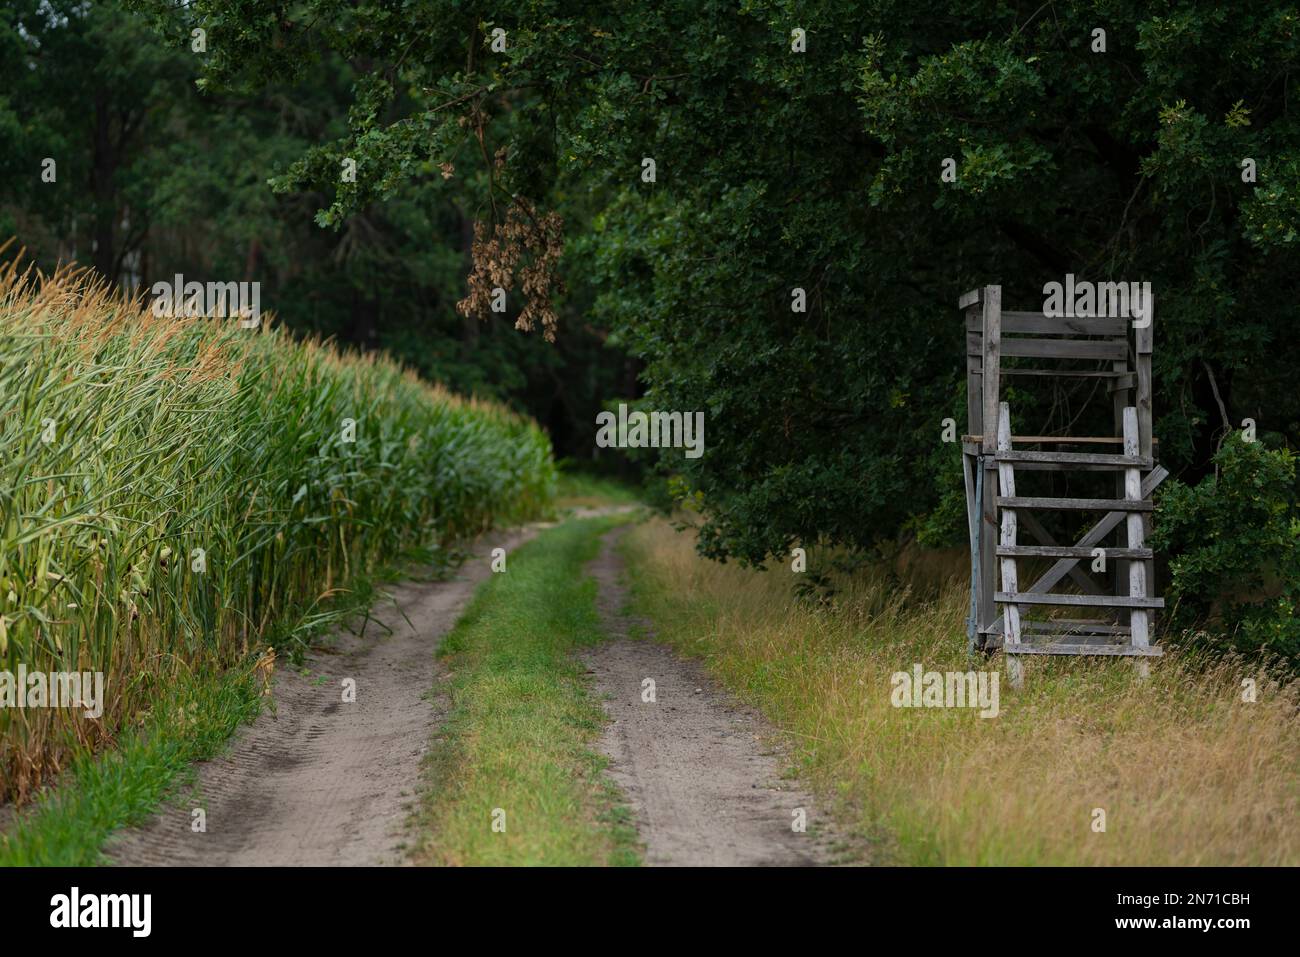 Asiento alto para un cazador junto a un campo de maíz en el bosque, poca profundidad de campo, bokeh suave, espacio libre para el texto Foto de stock